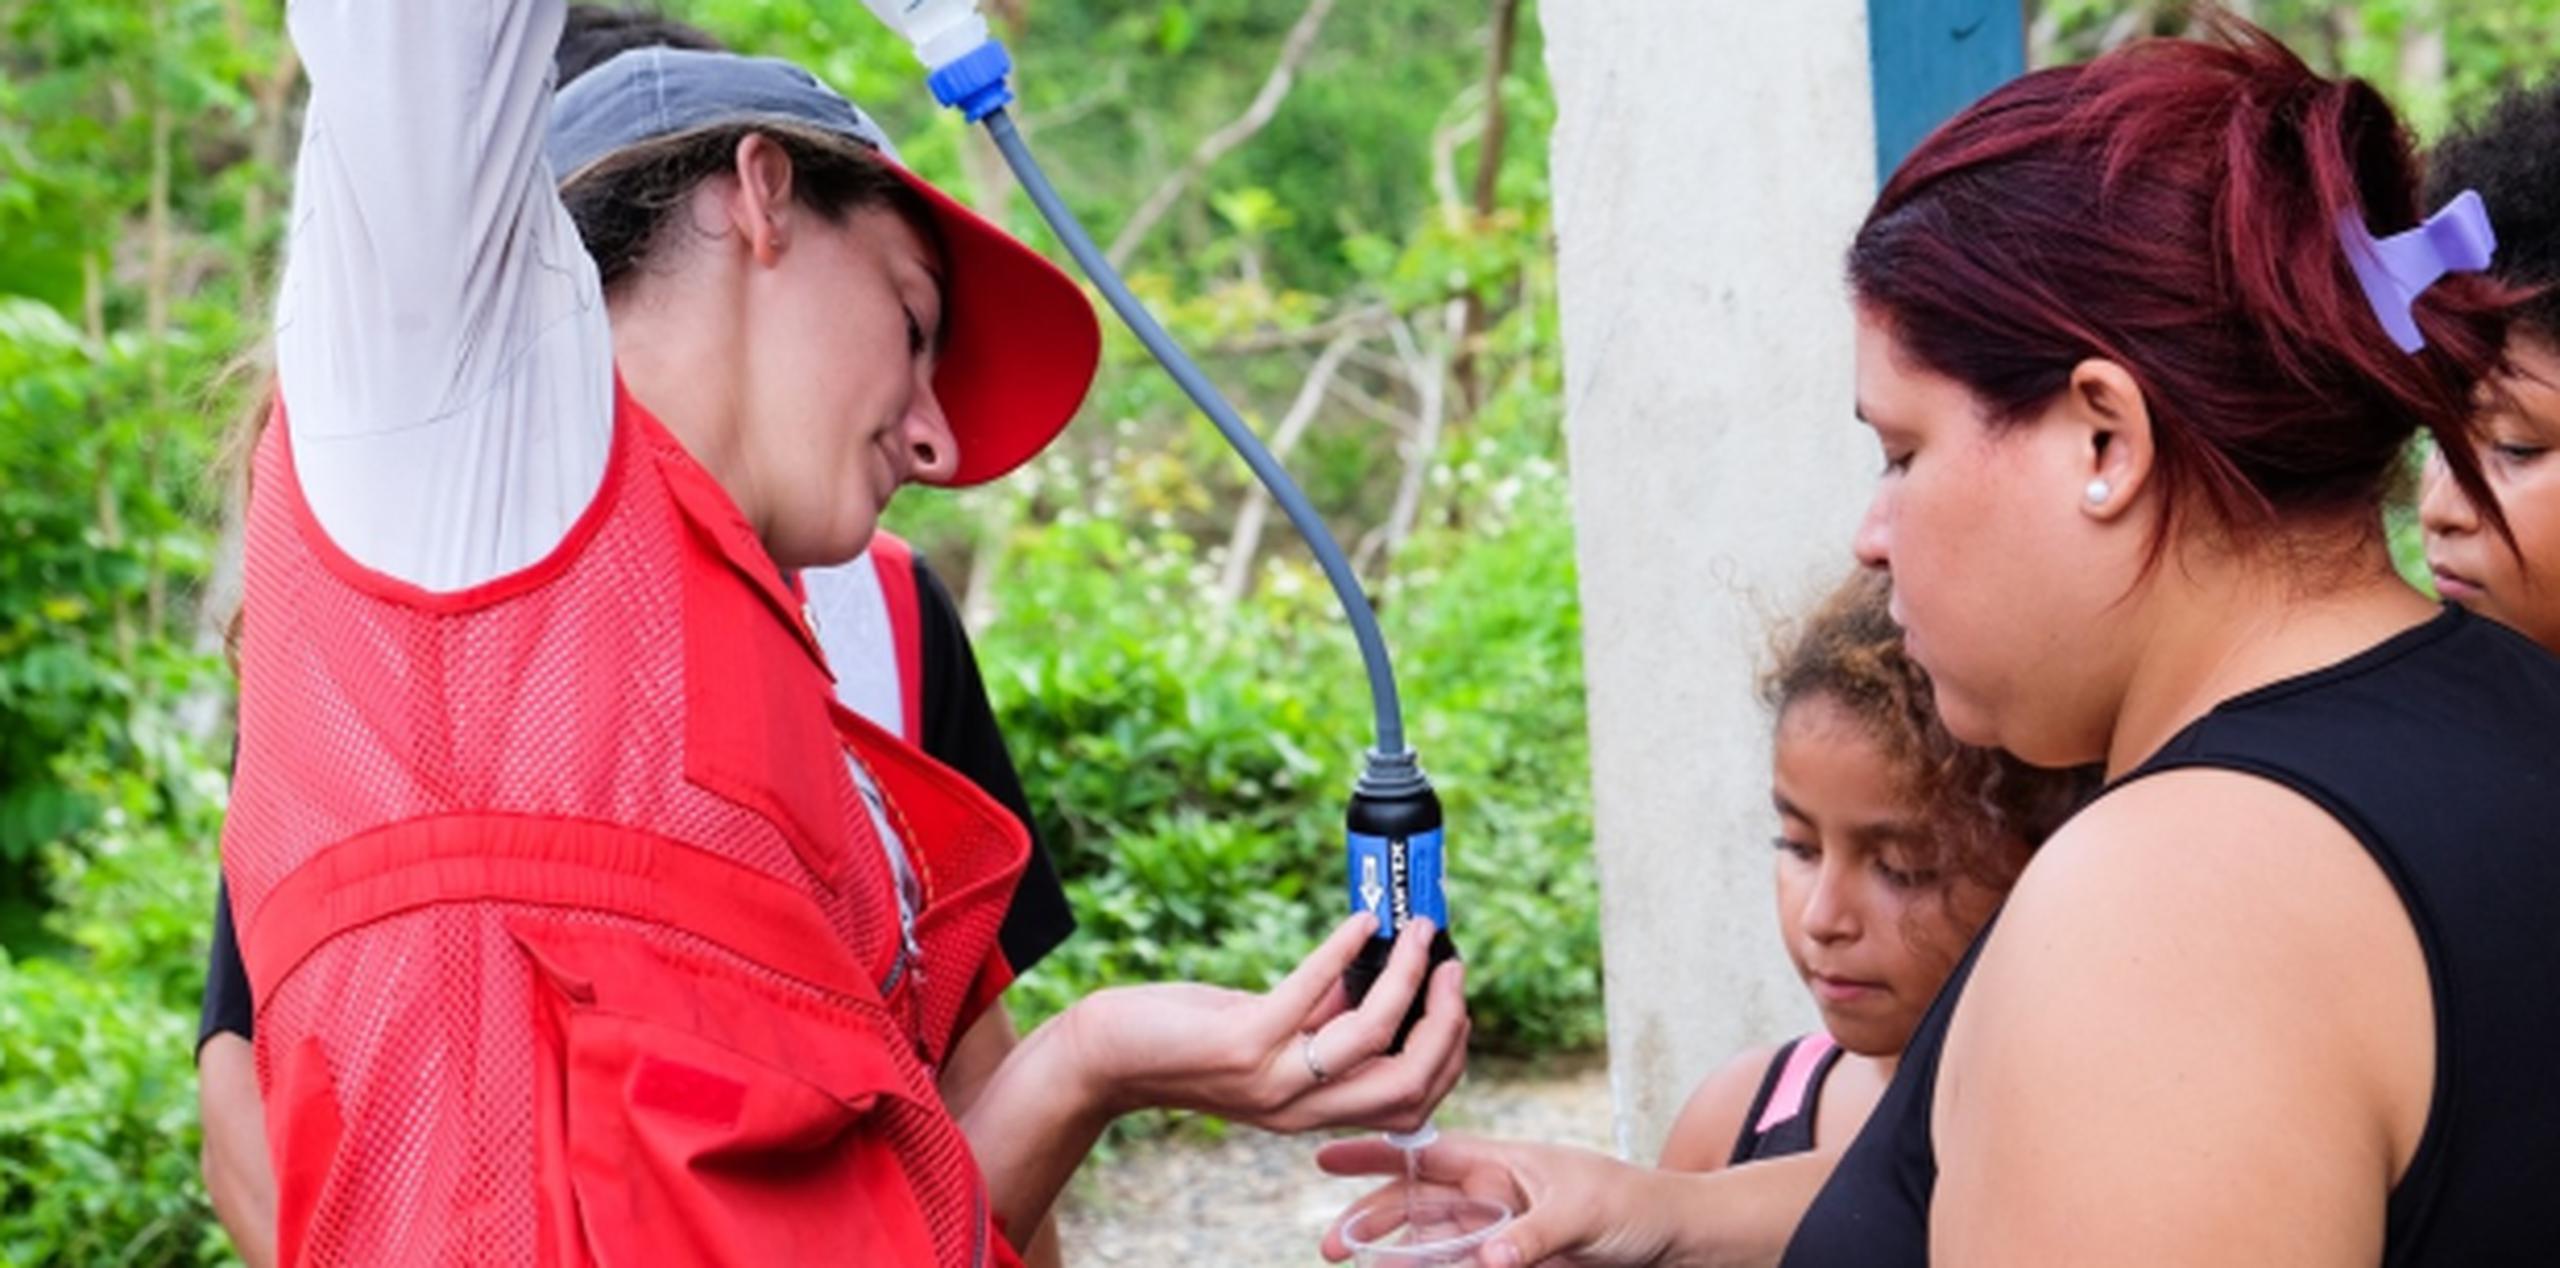 Los voluntarios muestran a las familias los beneficios de usar el sistema de filtración de agua. (Suministrada)